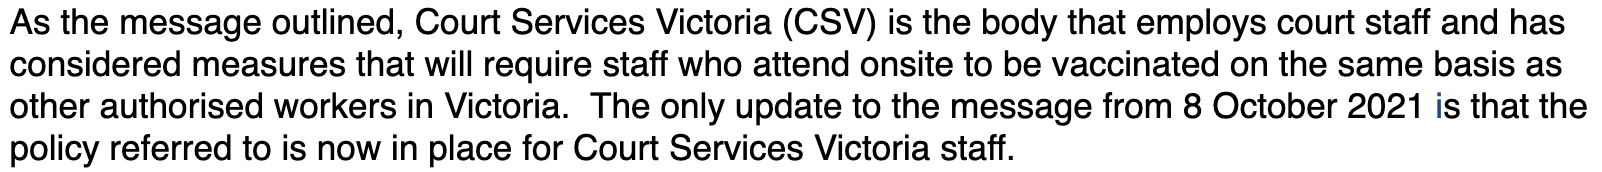 Auszug aus der E-Mail eines Pressesprechers des Obersten Gerichtshofs des australischen Bundesstaates Victoria 